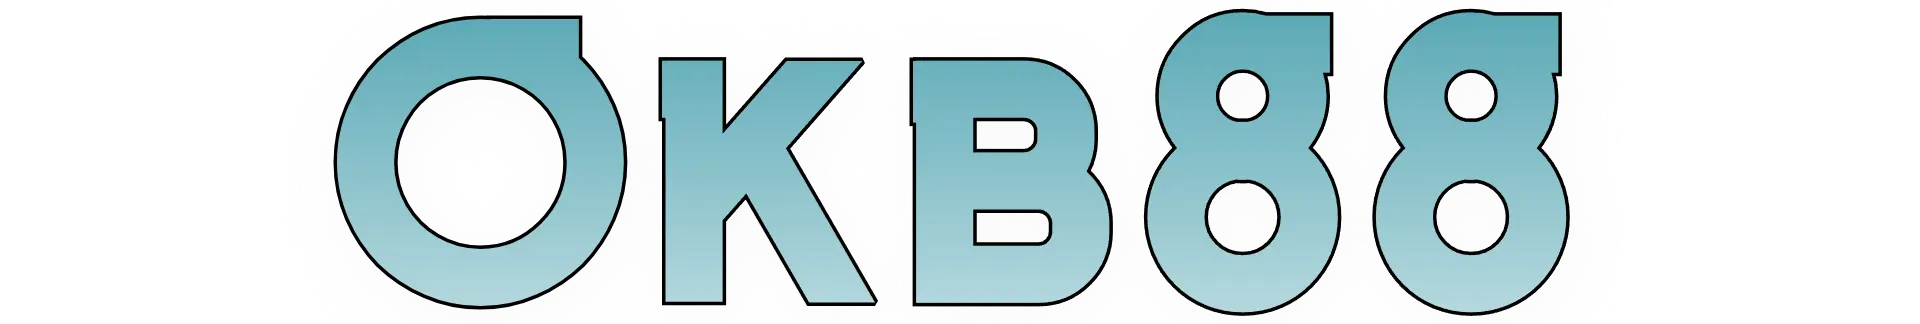 Okb88